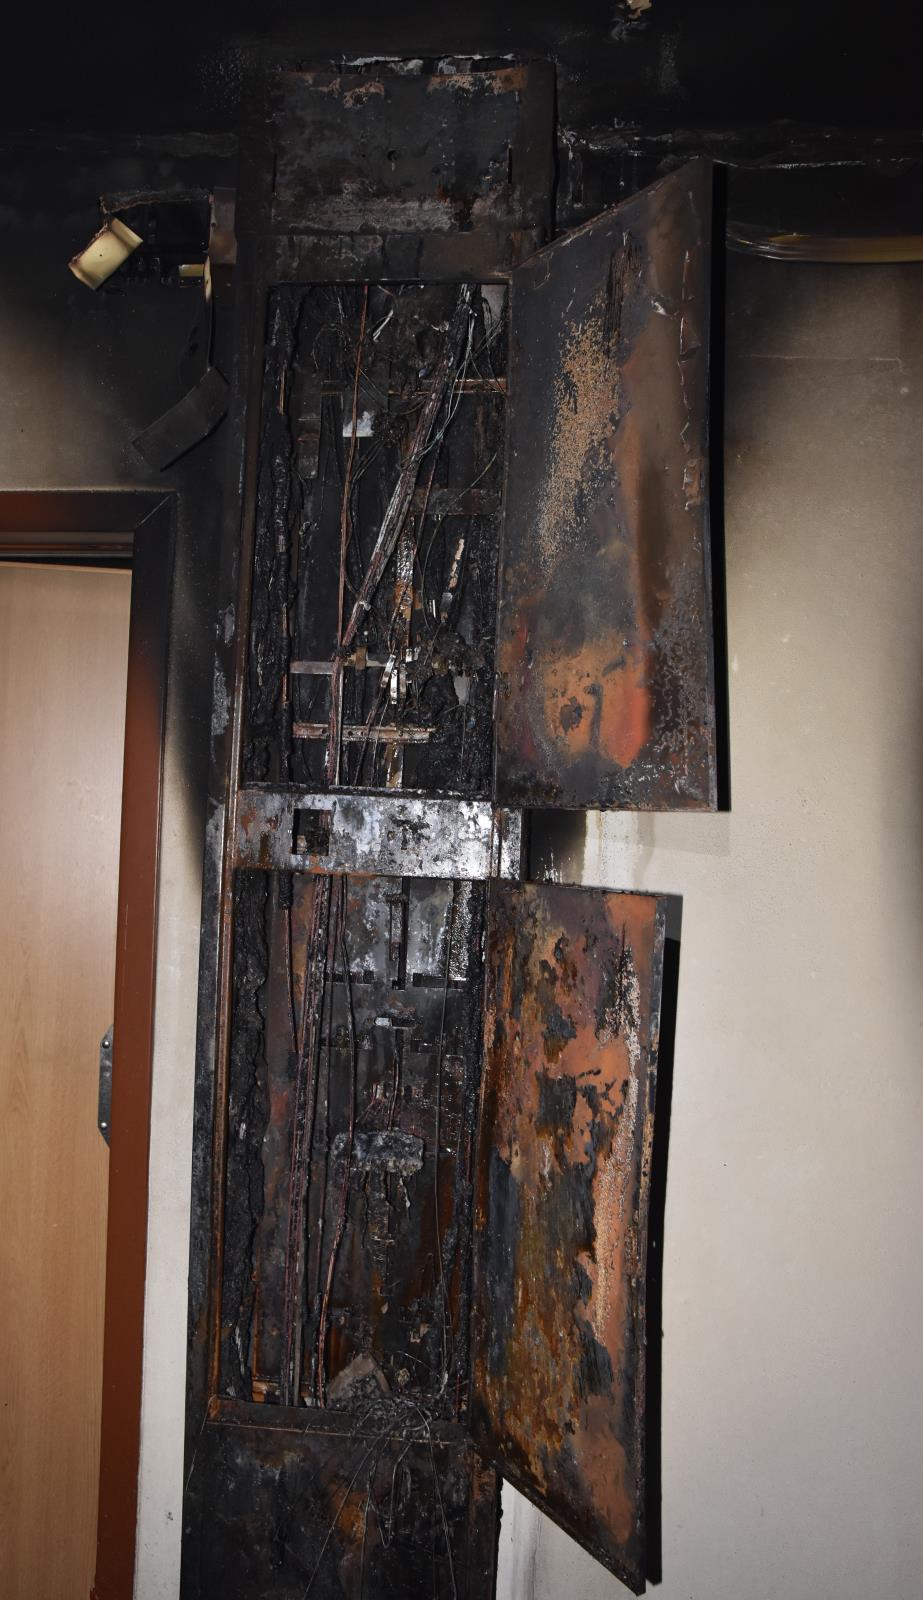 7.10.2020 požár elektroinstalace v panelovém domě